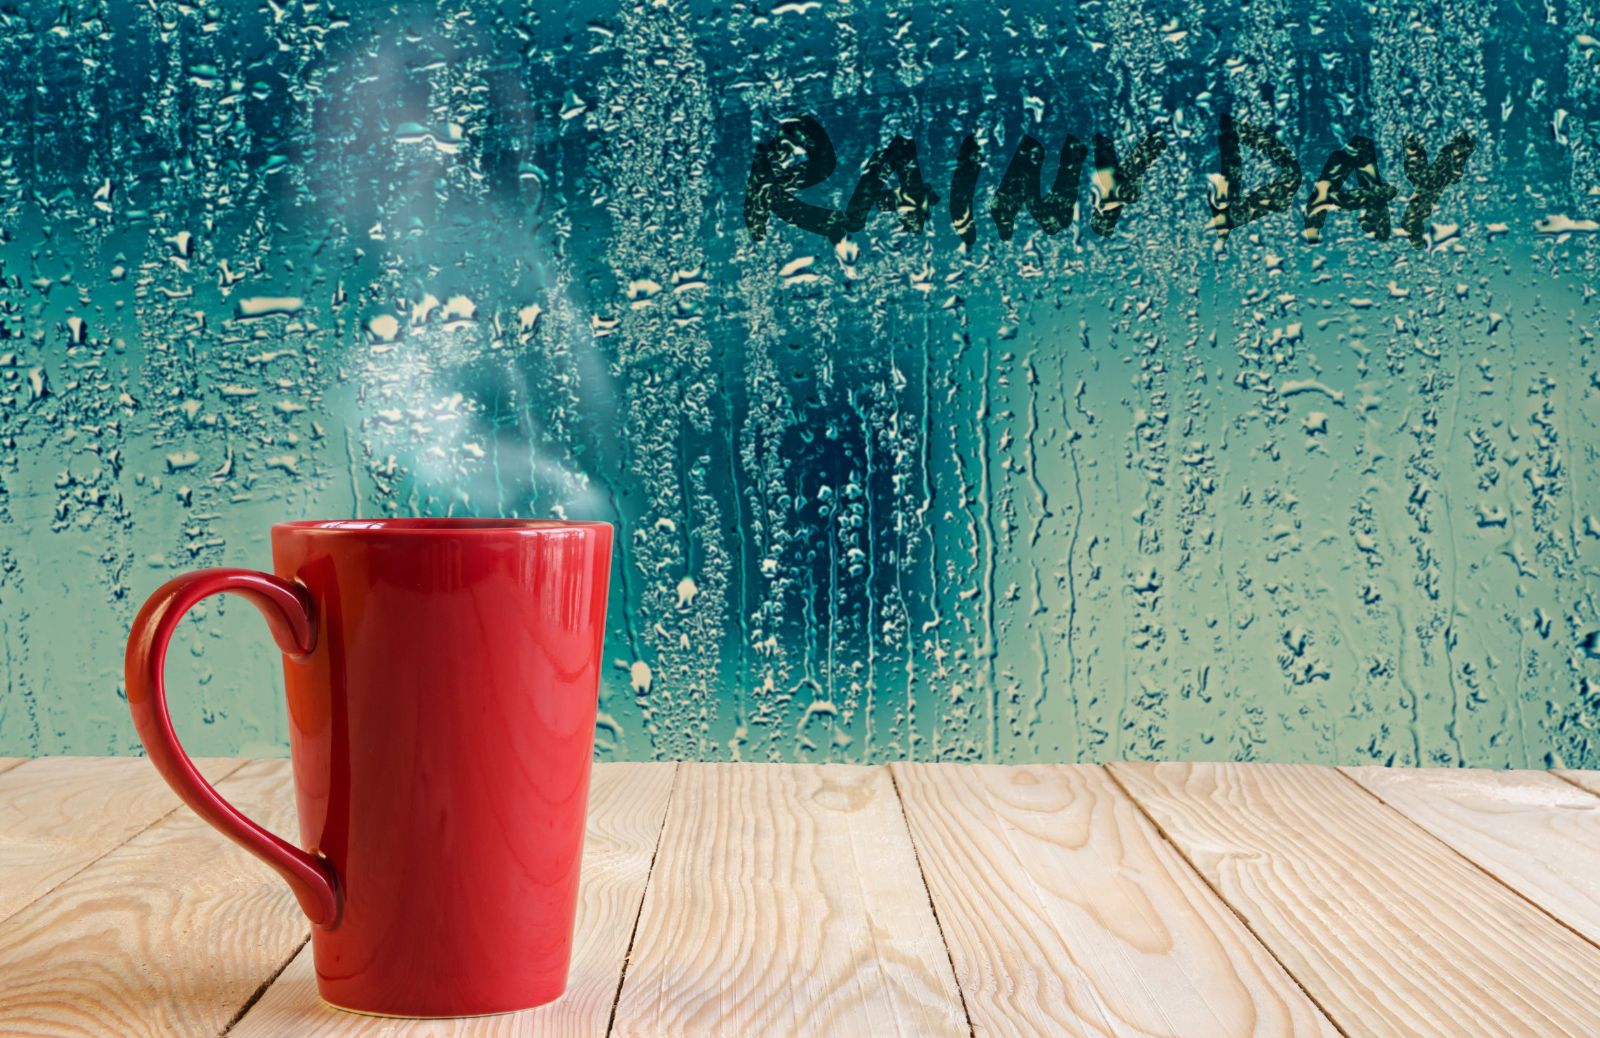 10 bellissime frasi sulla pioggia